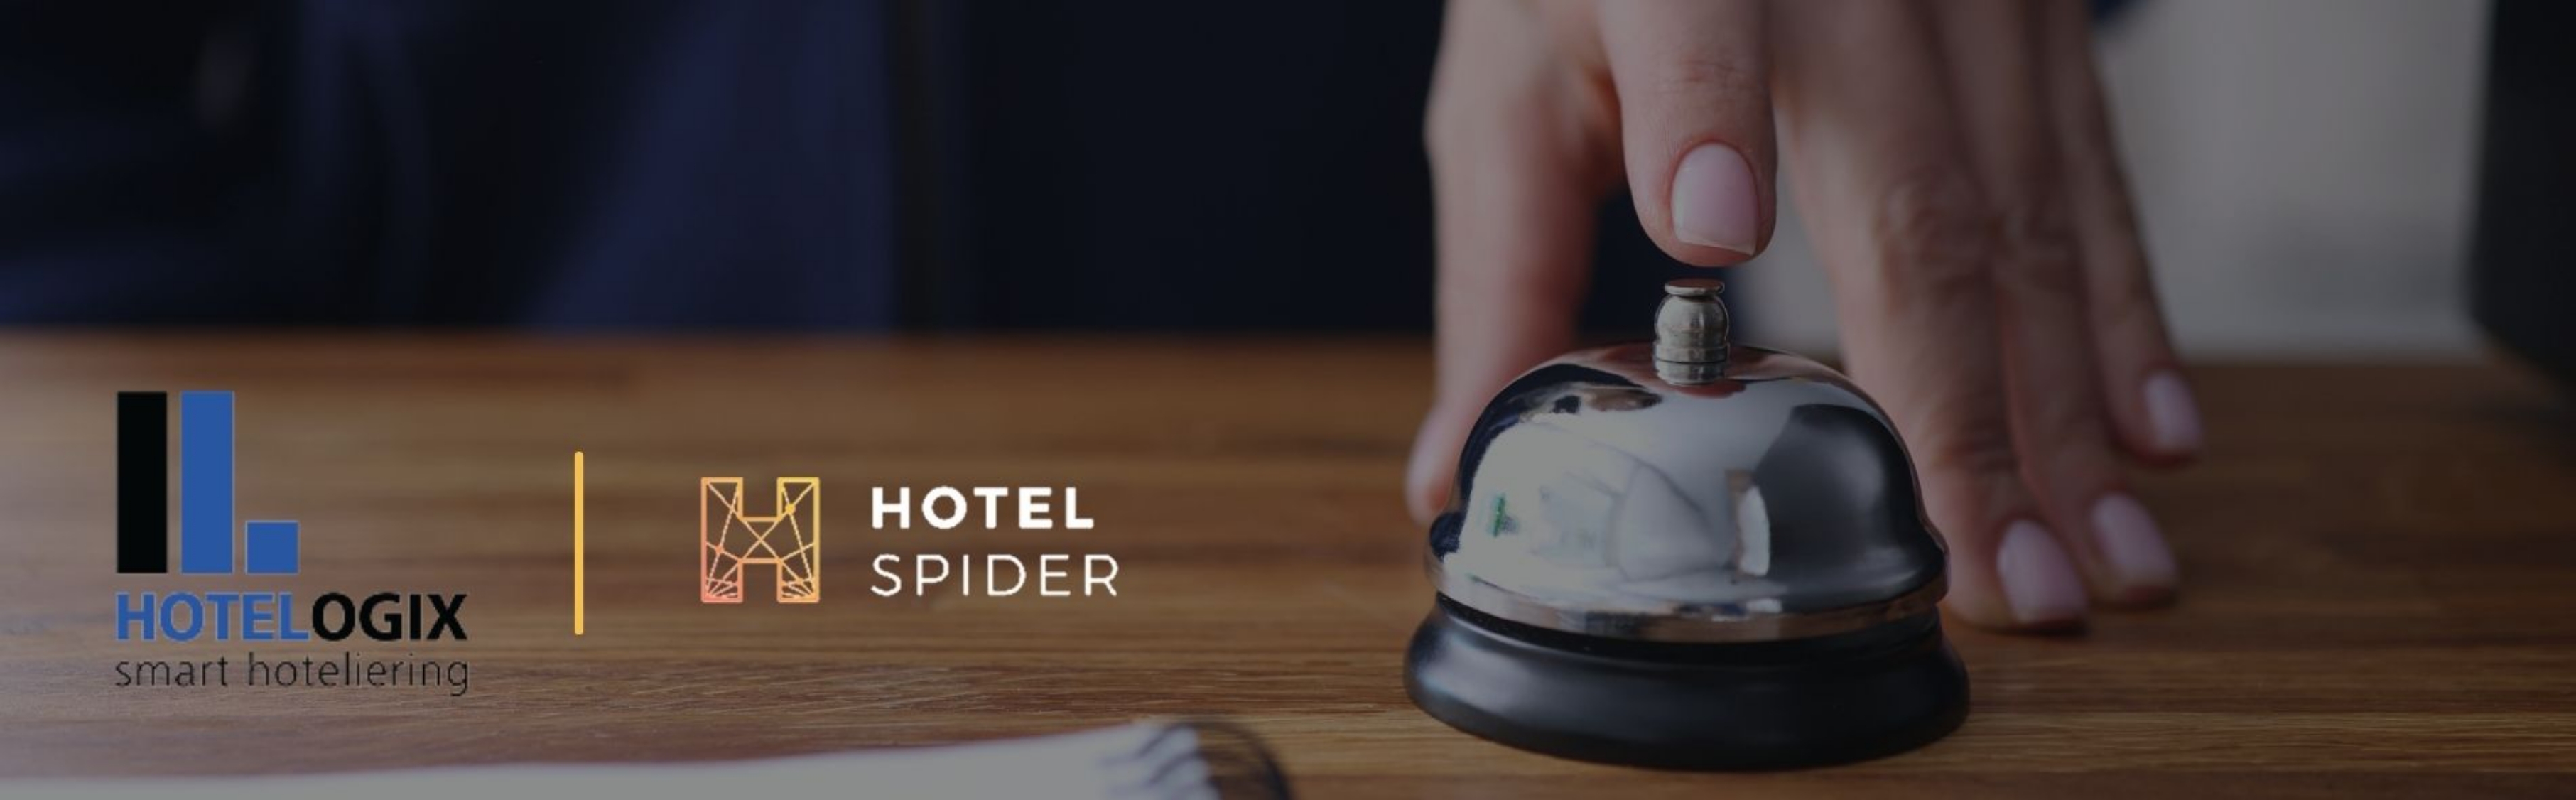 Hotel Spider